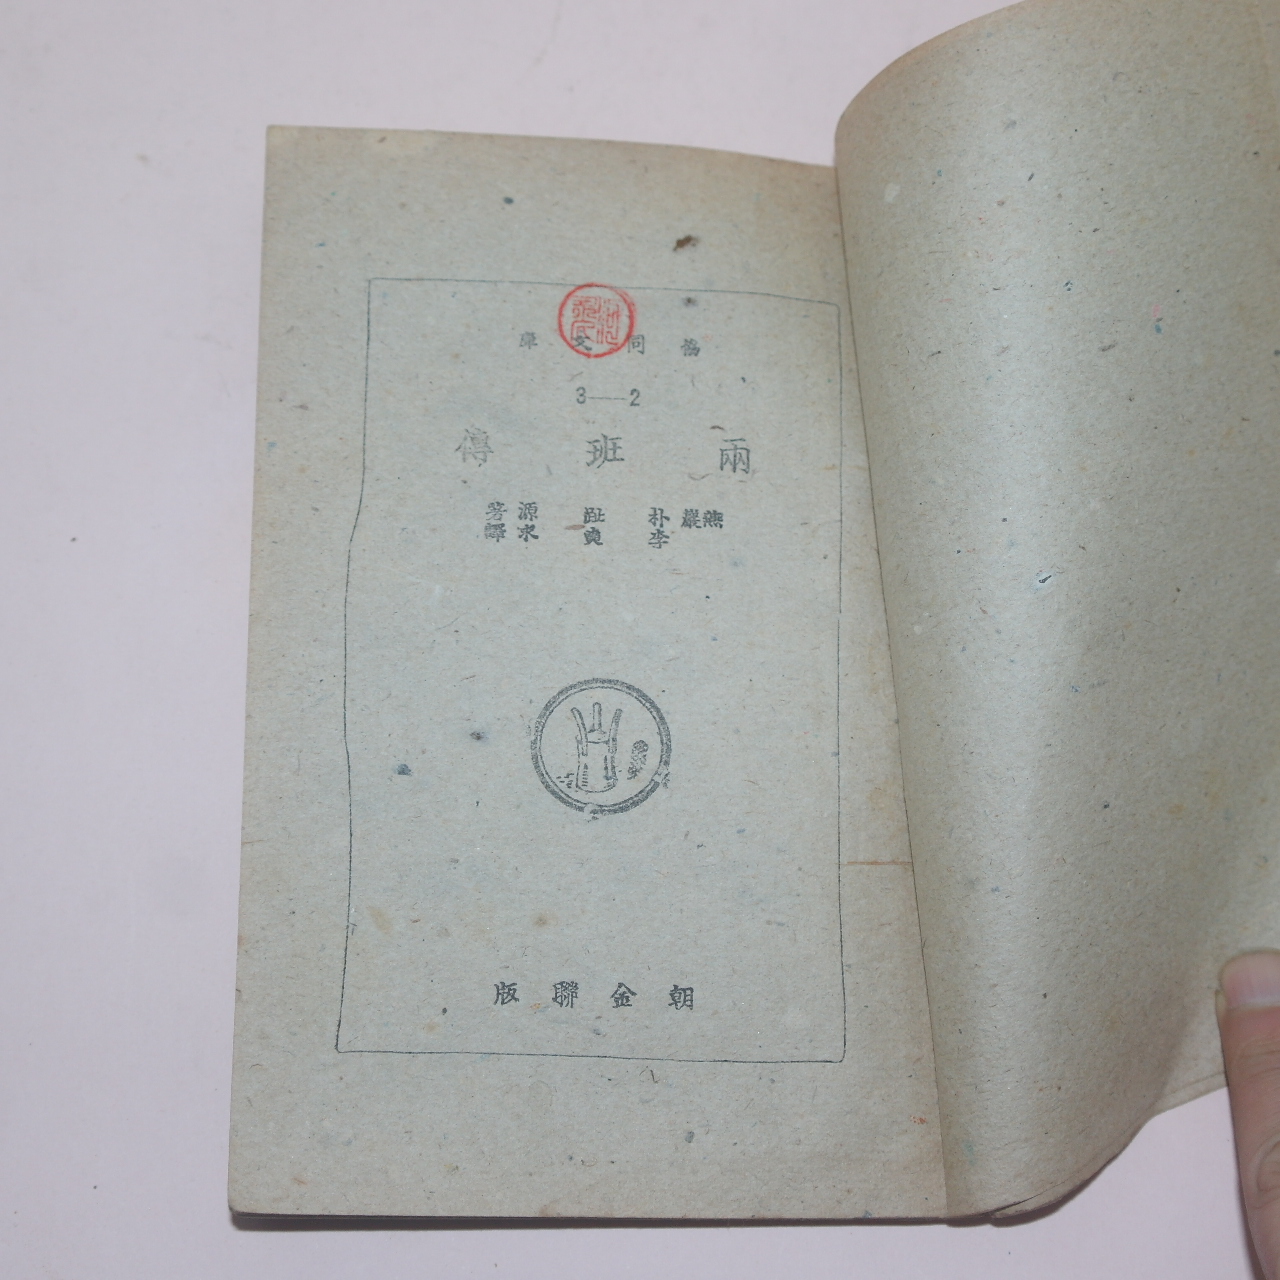 1947년 박지원(朴趾源) 양반전(兩班傳) 1책완질